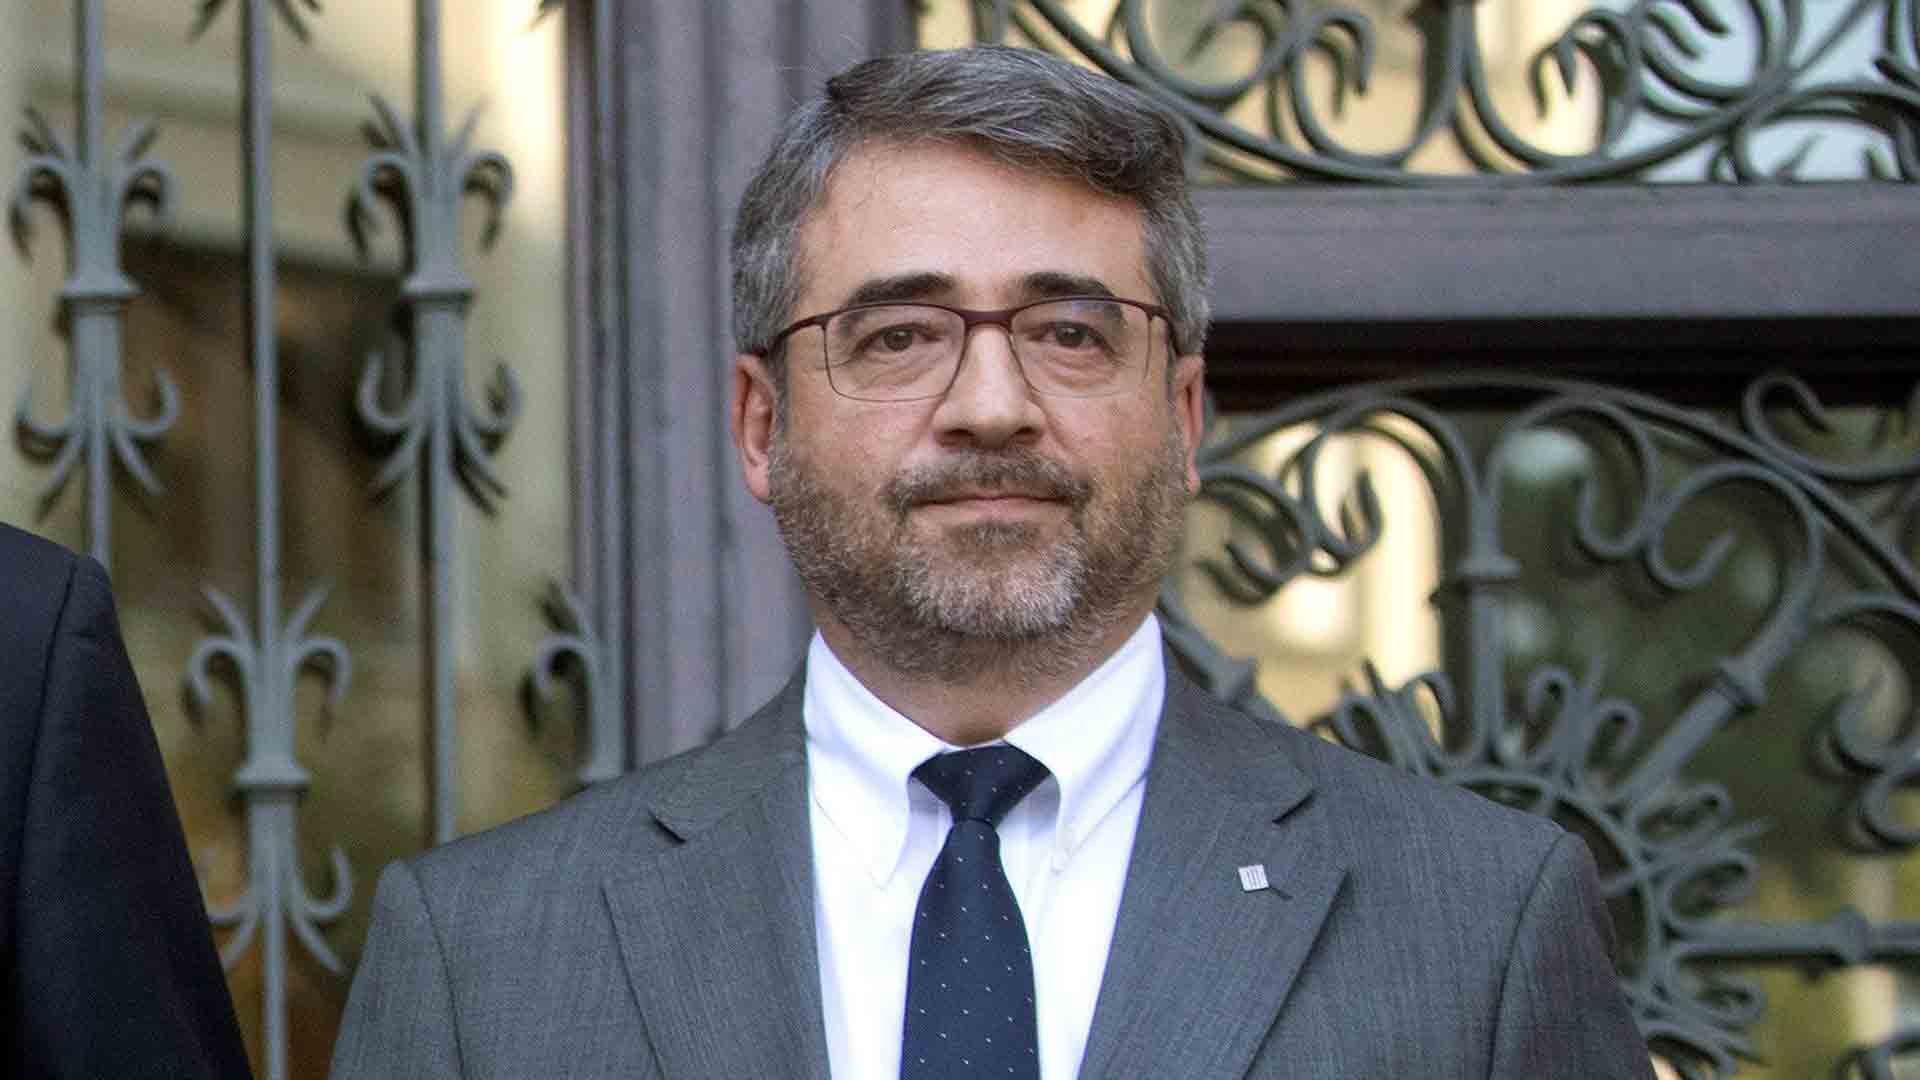 Dimite el director de los Mossos, Andreu Martínez, en vísperas del aniversario del 1-O